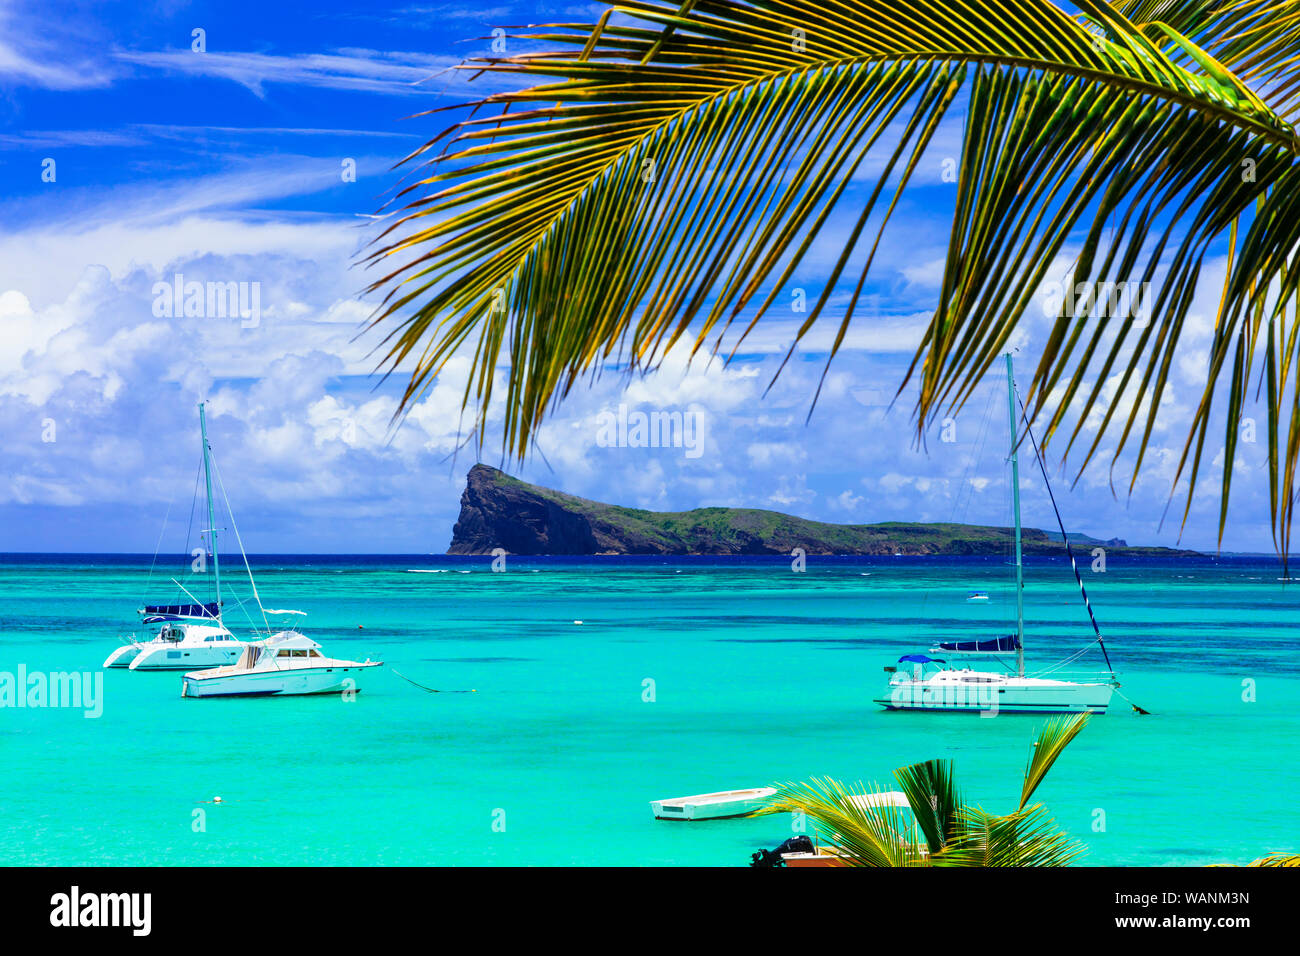 Belle vue,Cap Malheureux avec une mer turquoise, des palmiers et des yachts, l'île Maurice. Banque D'Images